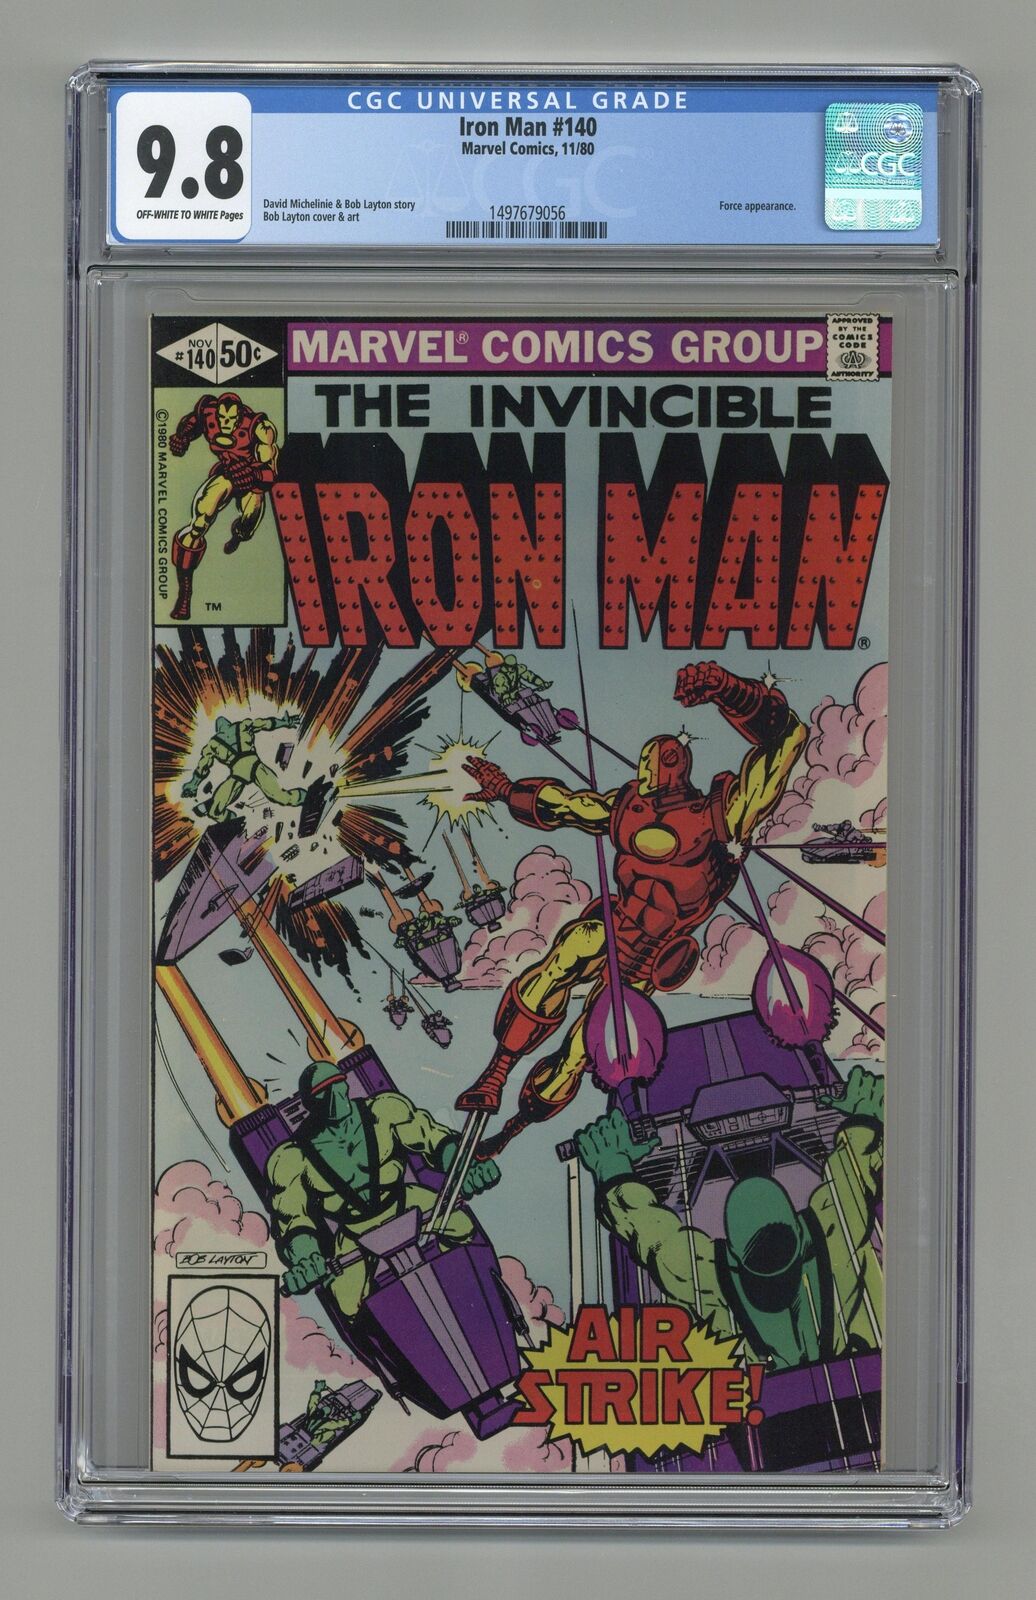 Iron Man #140 CGC 9.8 1980 1497679056